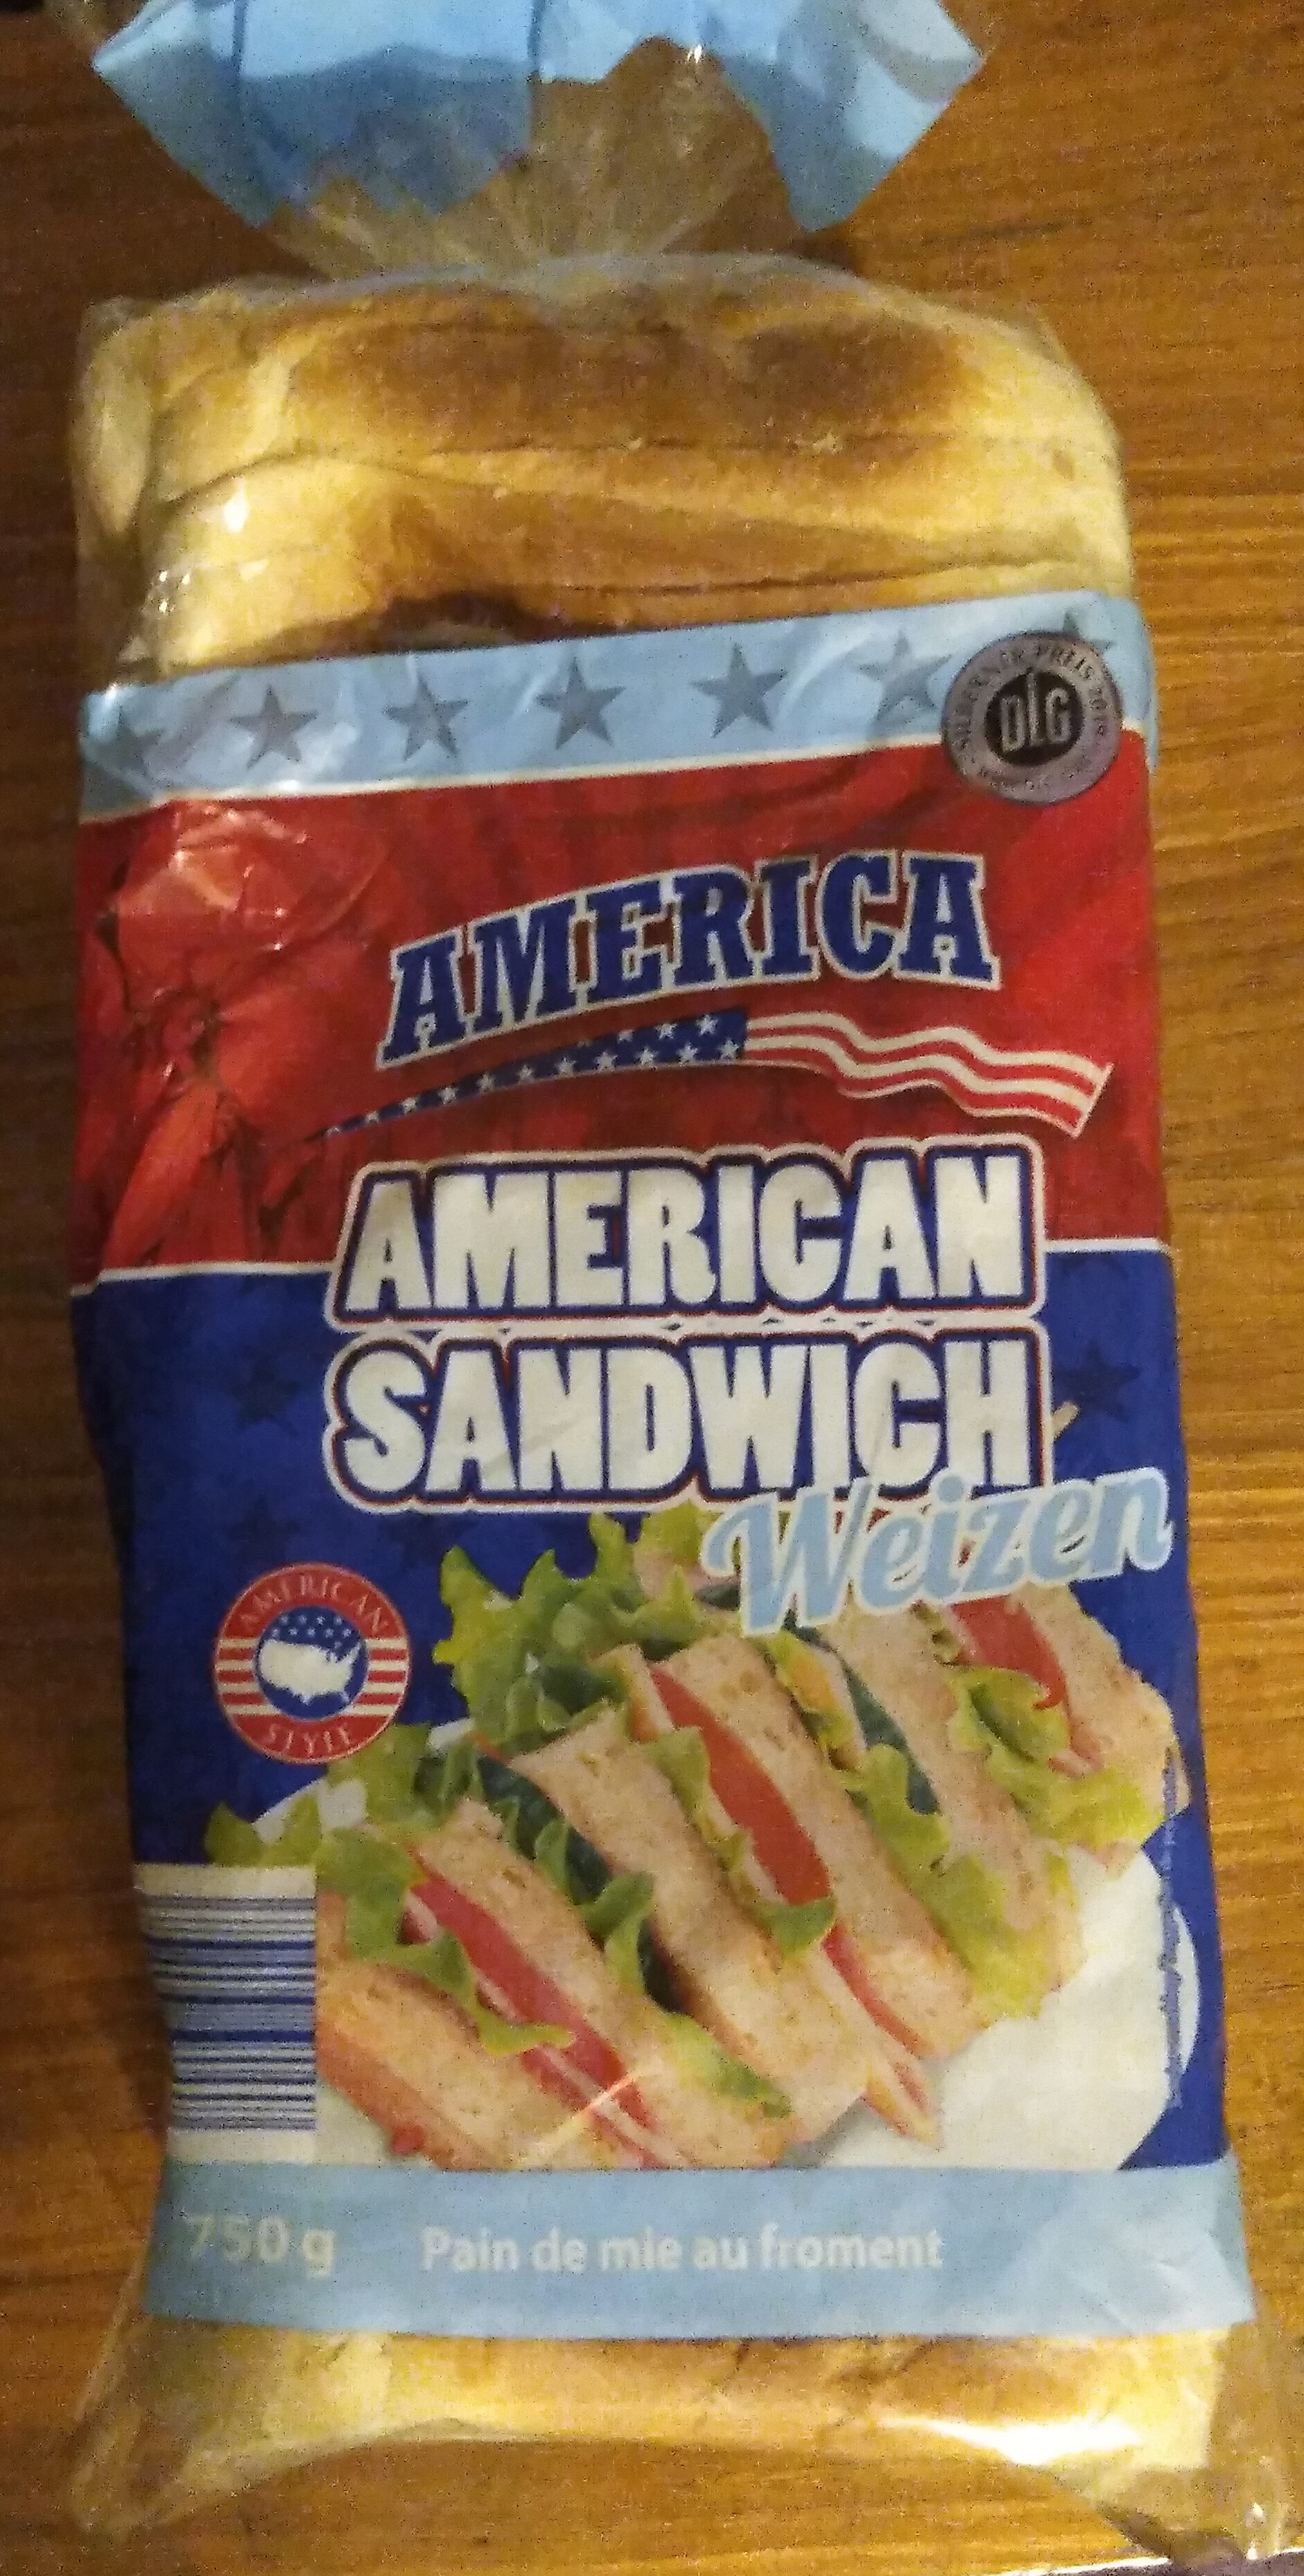 AMERICAN SANDWICH Weizen - Product - de